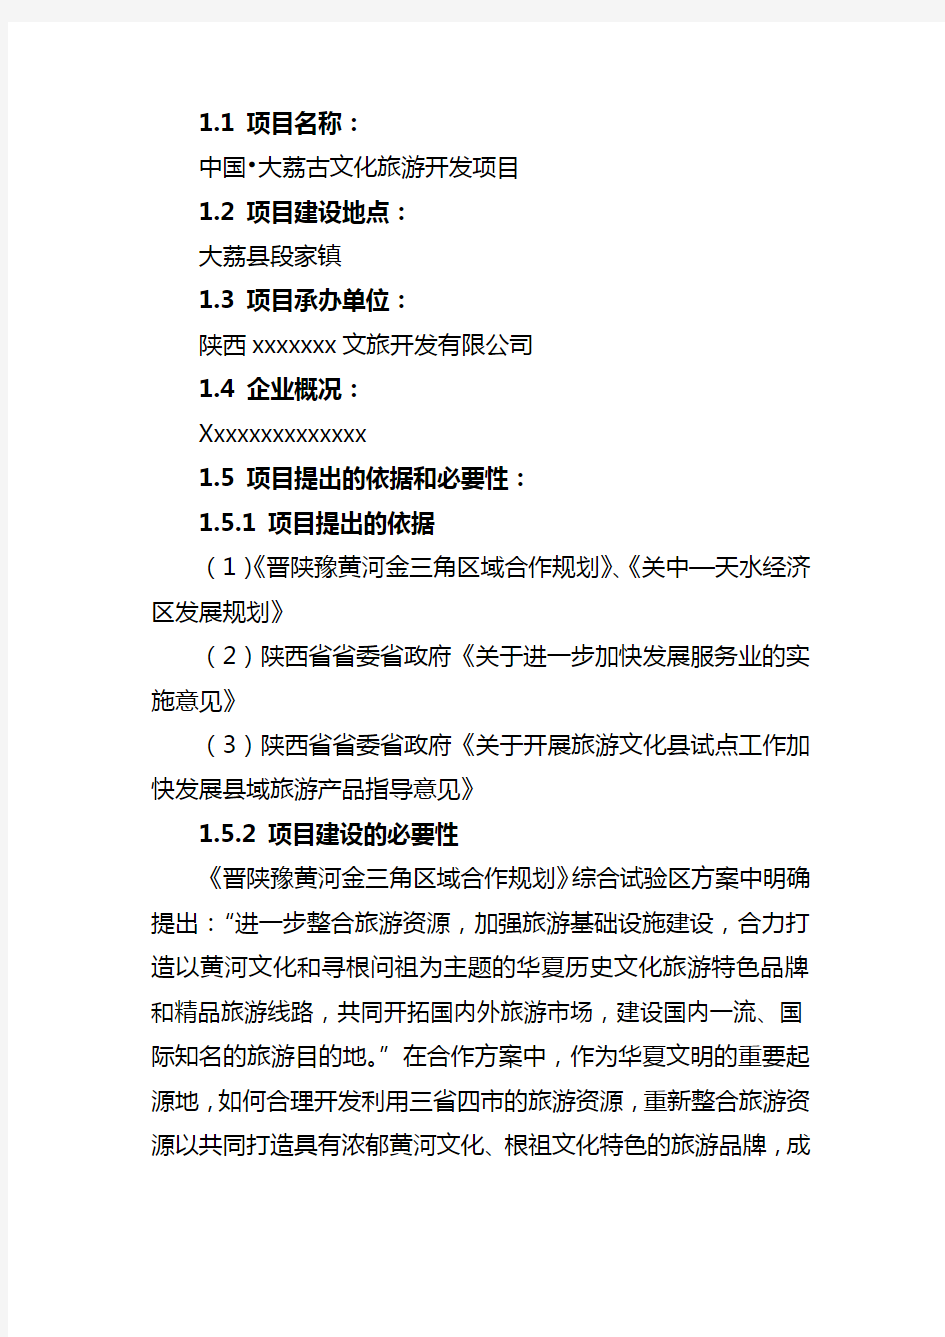 中国大荔古文化旅游开发项目策划书(.1.26)上课讲义